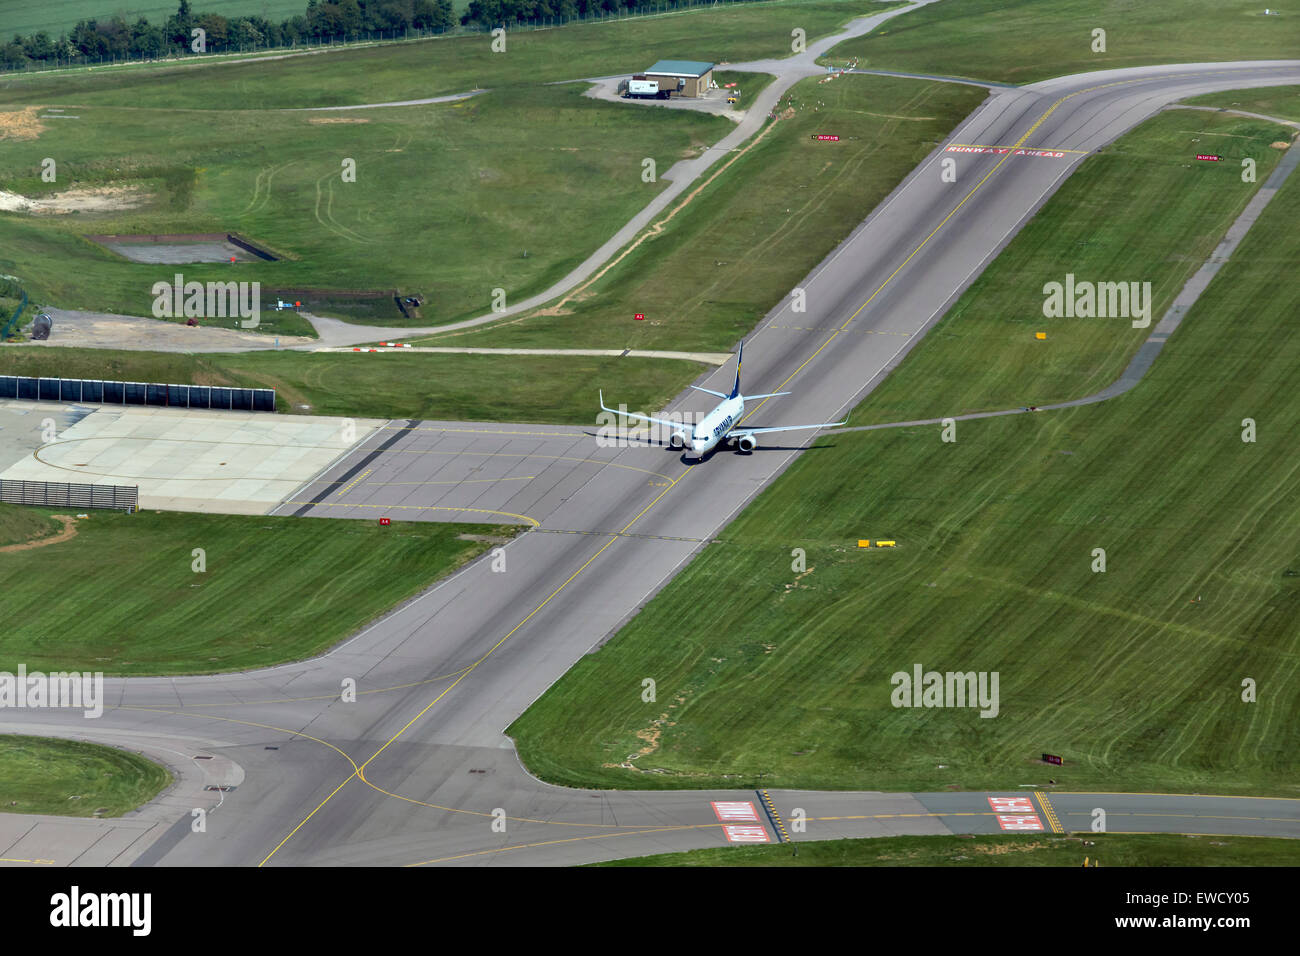 Aeropuerto de Luton Aeropuerto, Vista aérea sobrecarga. Una rodadura JET RYANAIR después de aterrizar en el aeropuerto de Luton Foto de stock